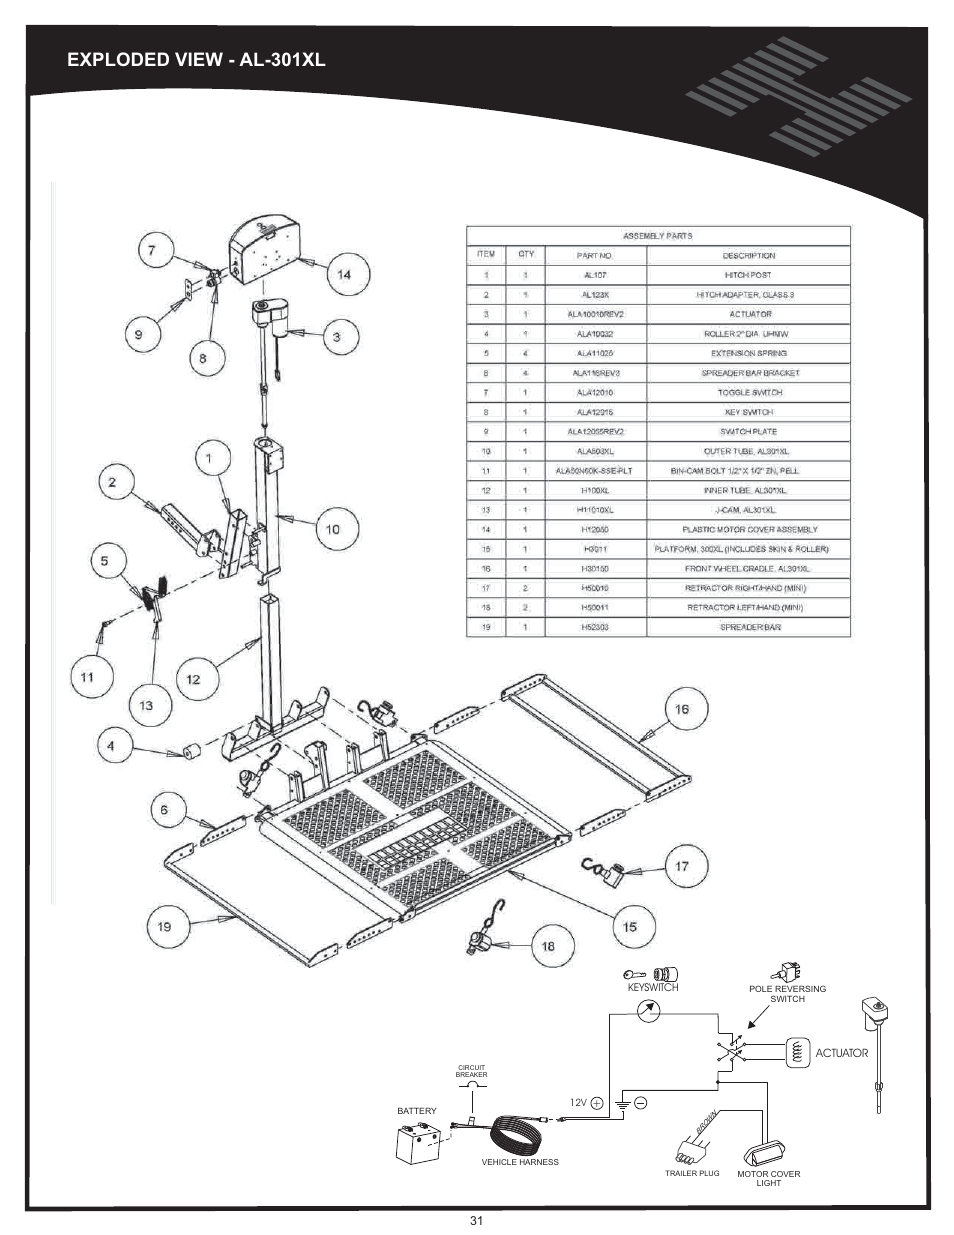 Al301xl, Exploded view - al-301xl | Harmar Mobility AL500 User Manual